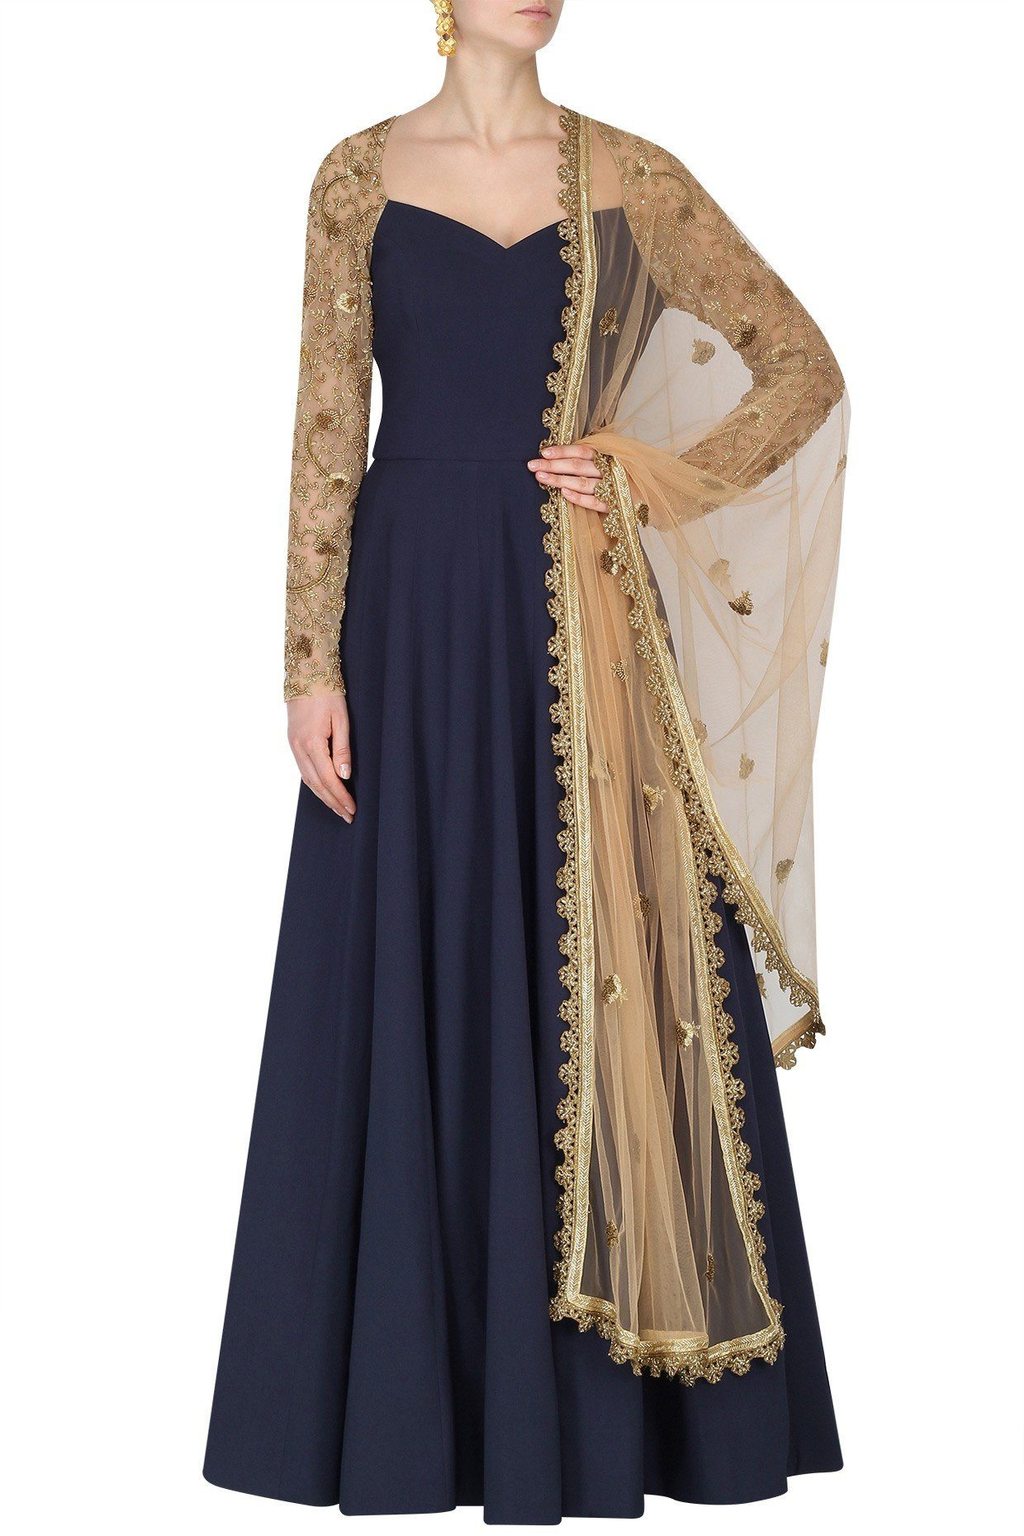 Designer Indian Blue Long Sleeves Anarkali Long Suit - Siya Fashions